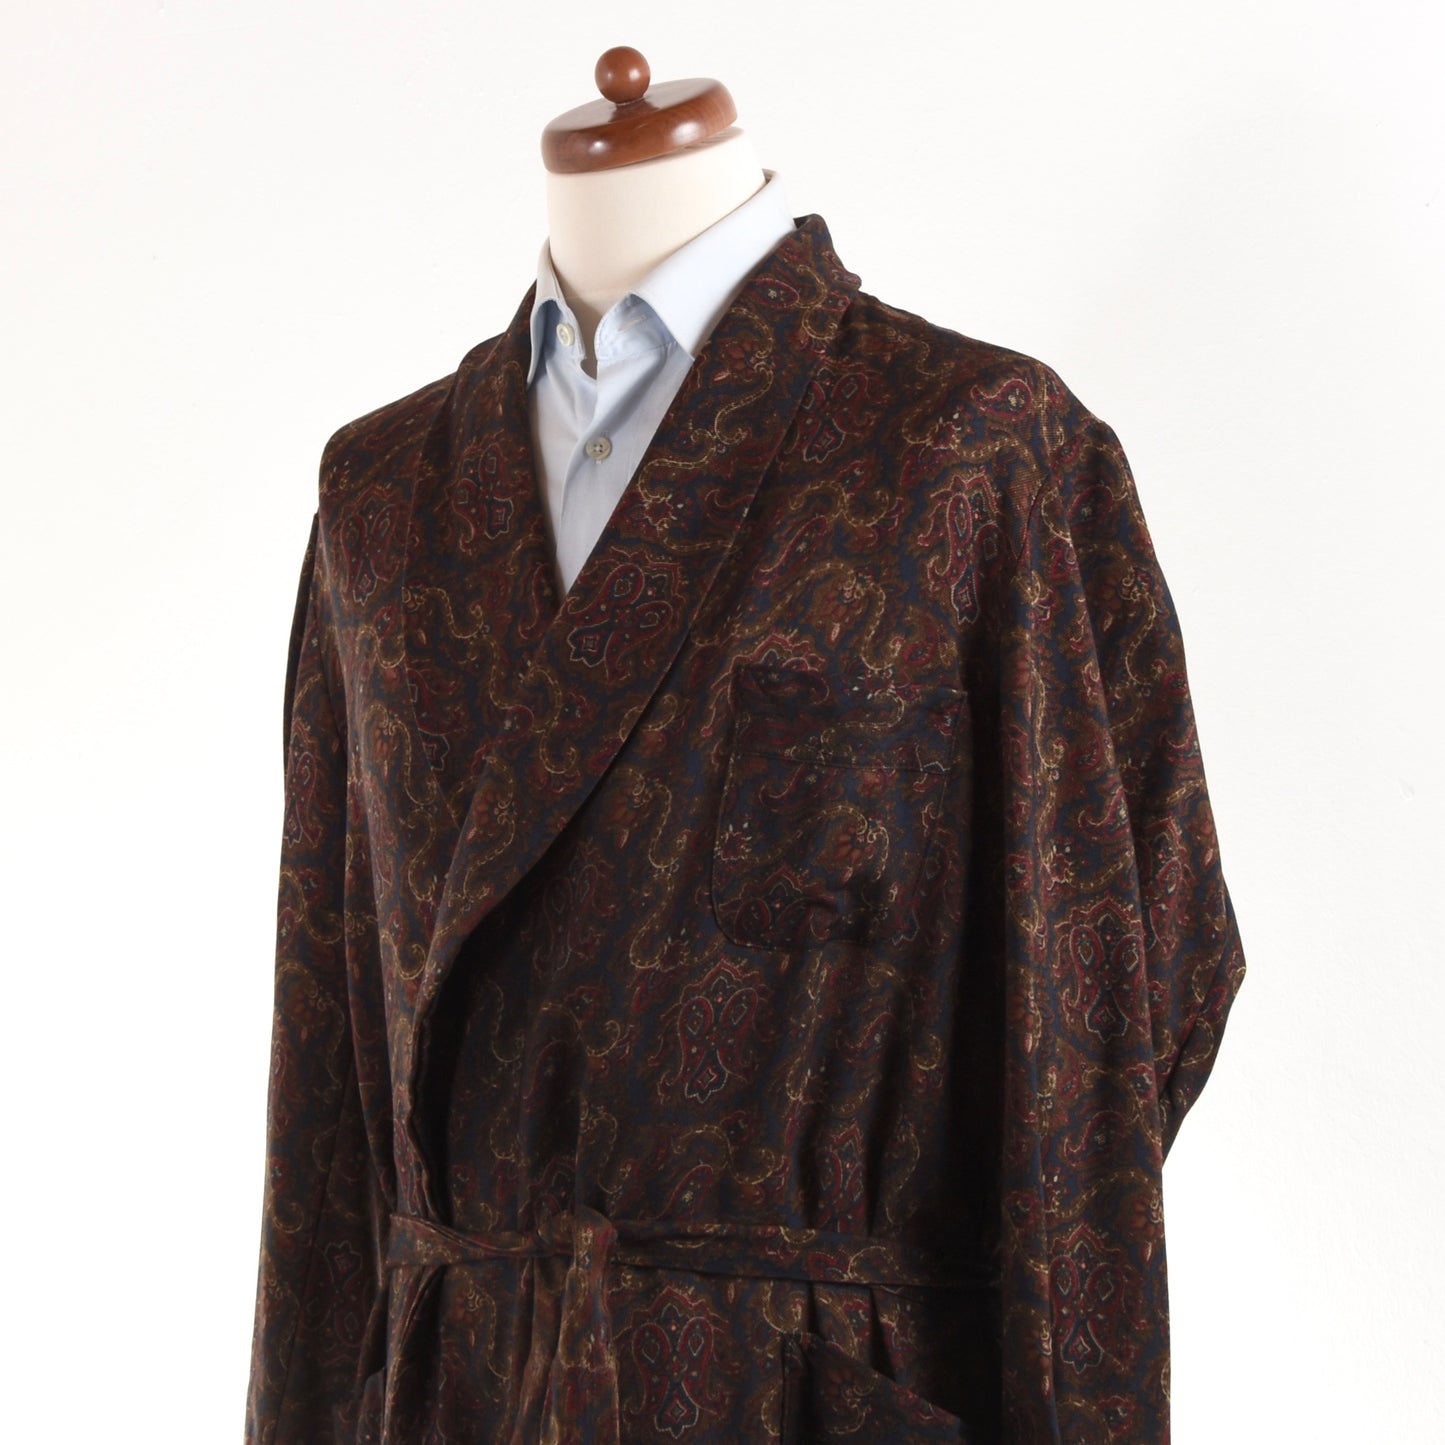 Vintage Old England Schalkragen Wolle Challis Robe - Paisley